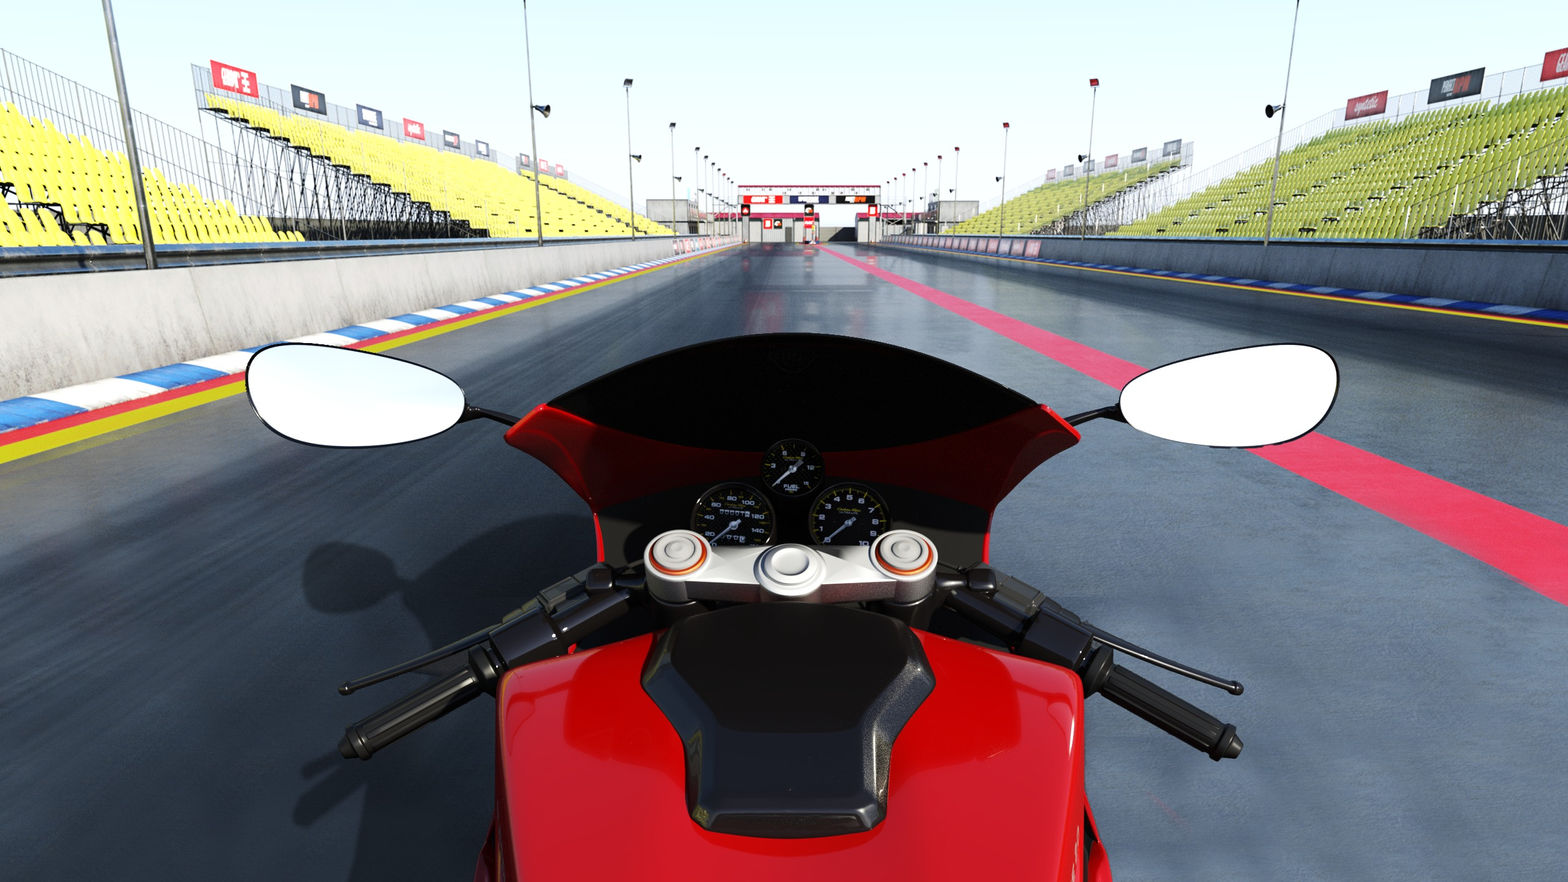 MotoVRX - Bike Racing Game